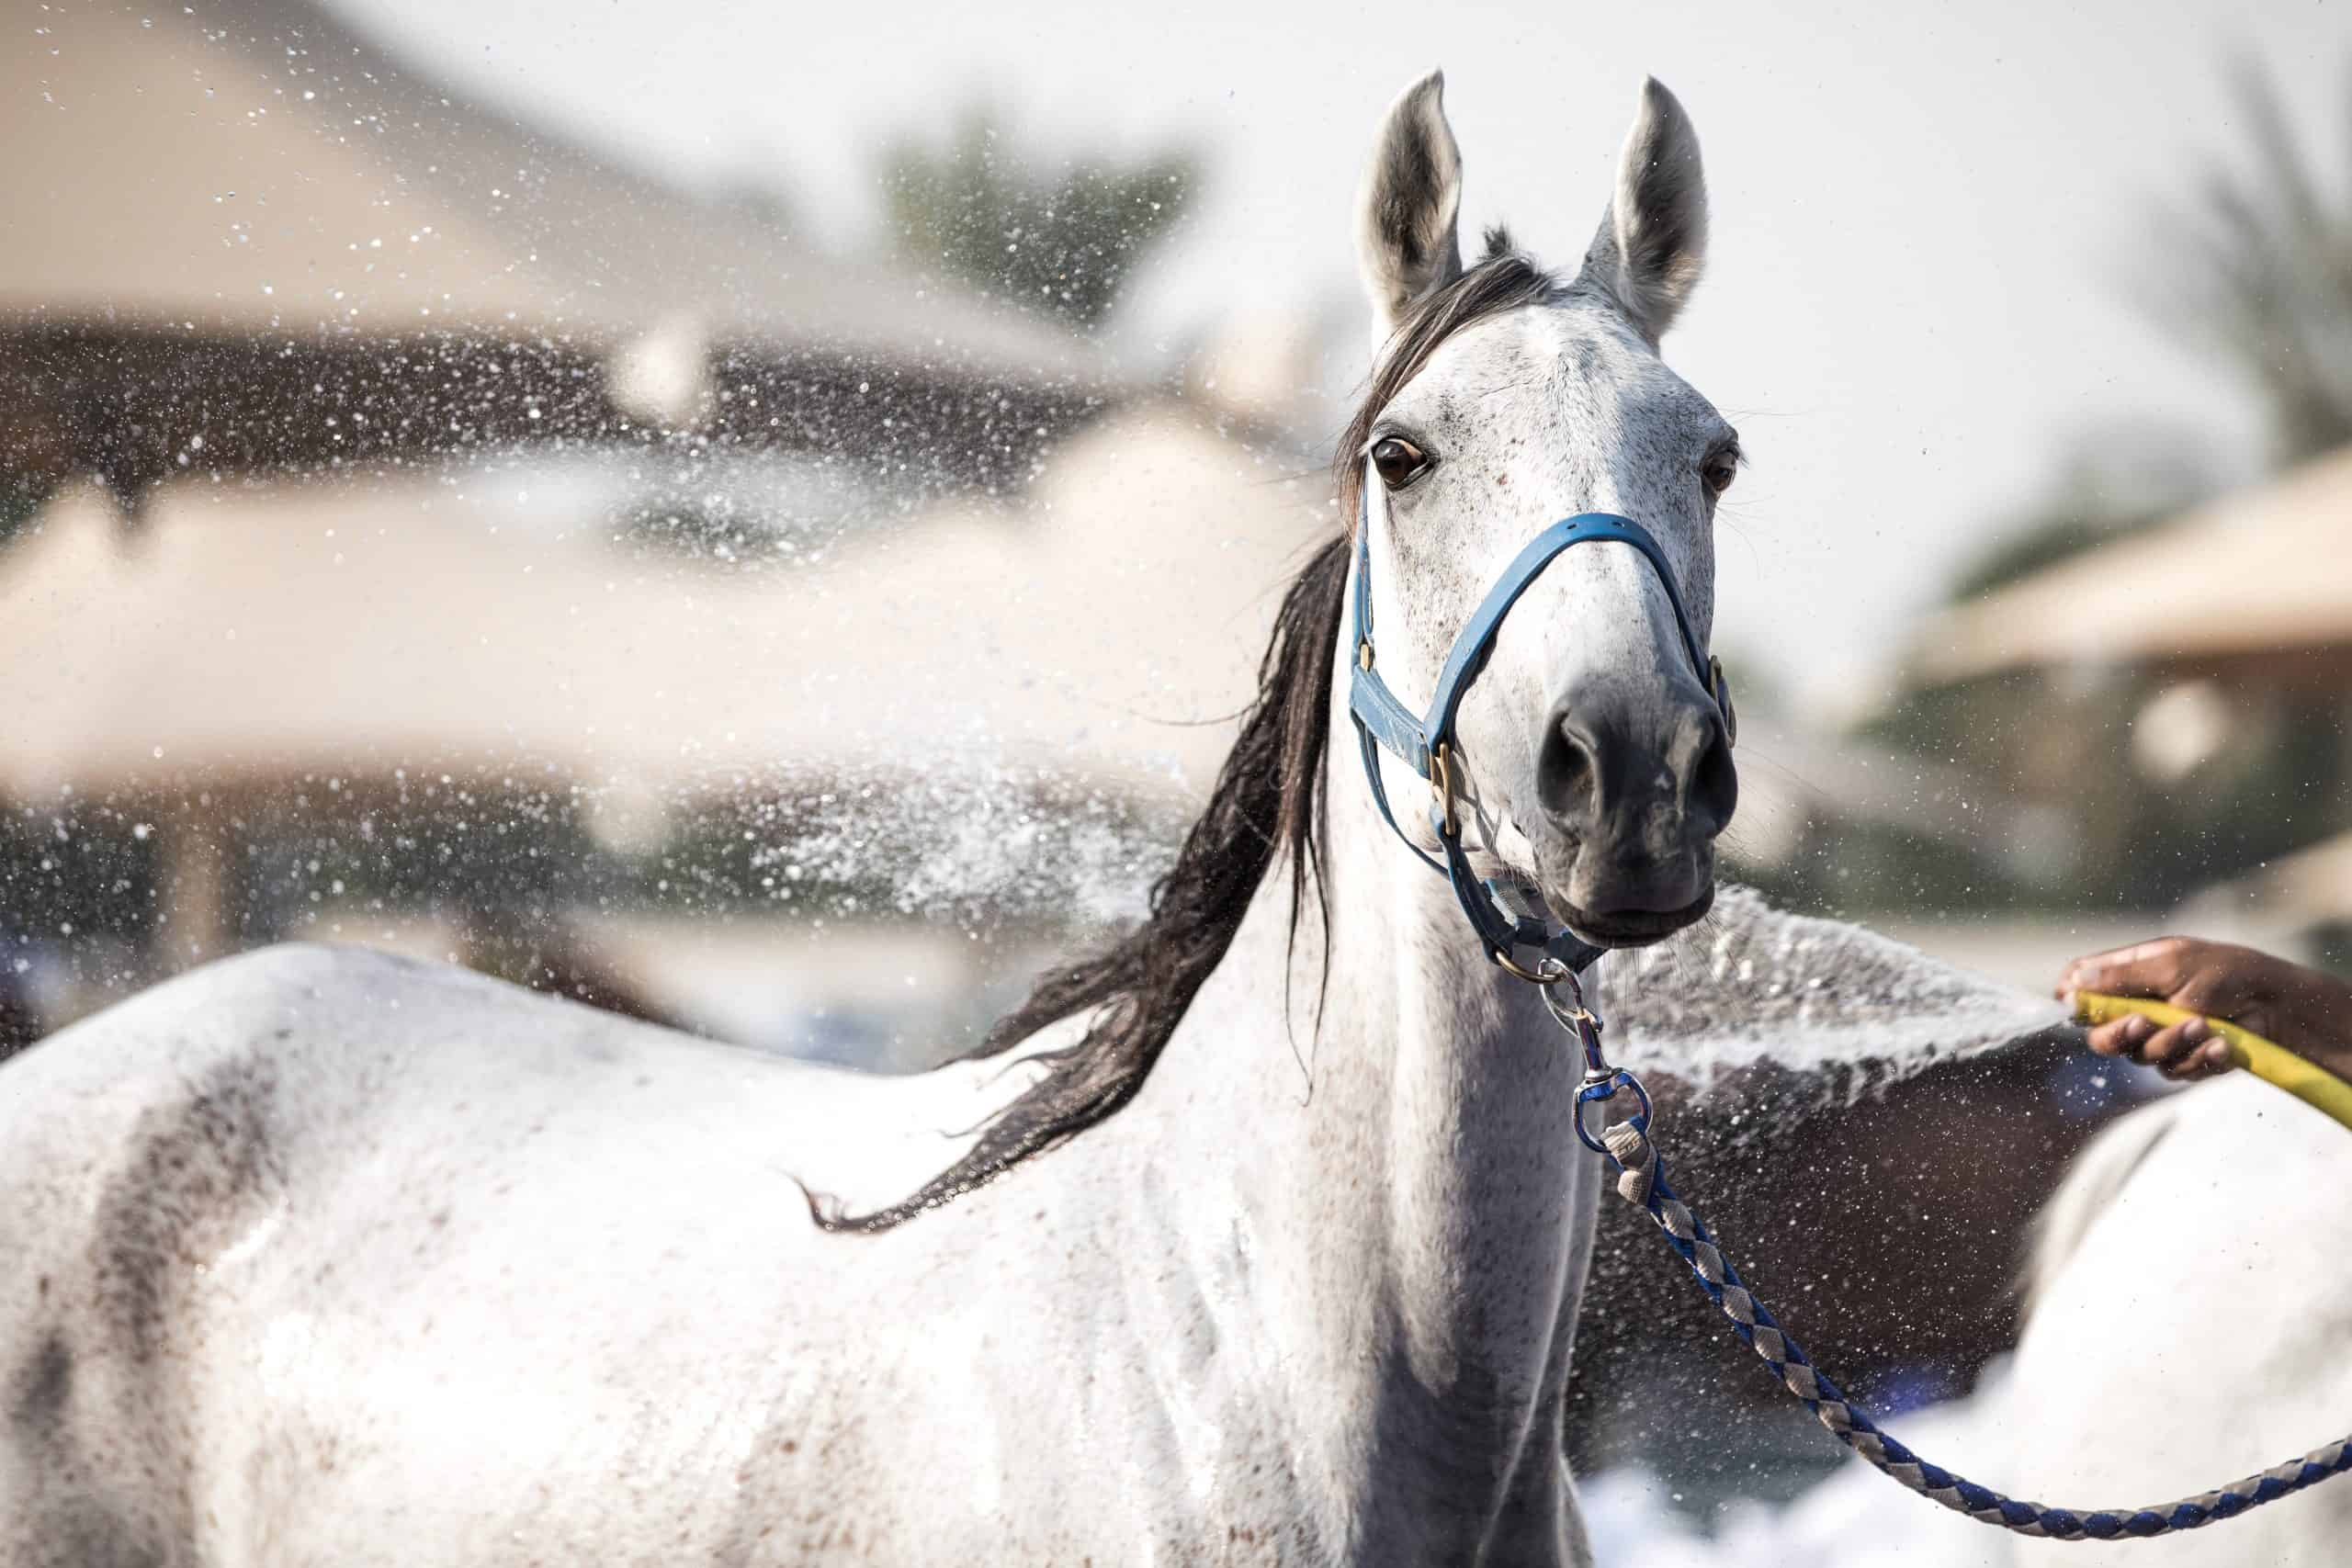 A relaxed Arabian horse enjoying a refreshing shower on a sunny day. Dubai, UAE.